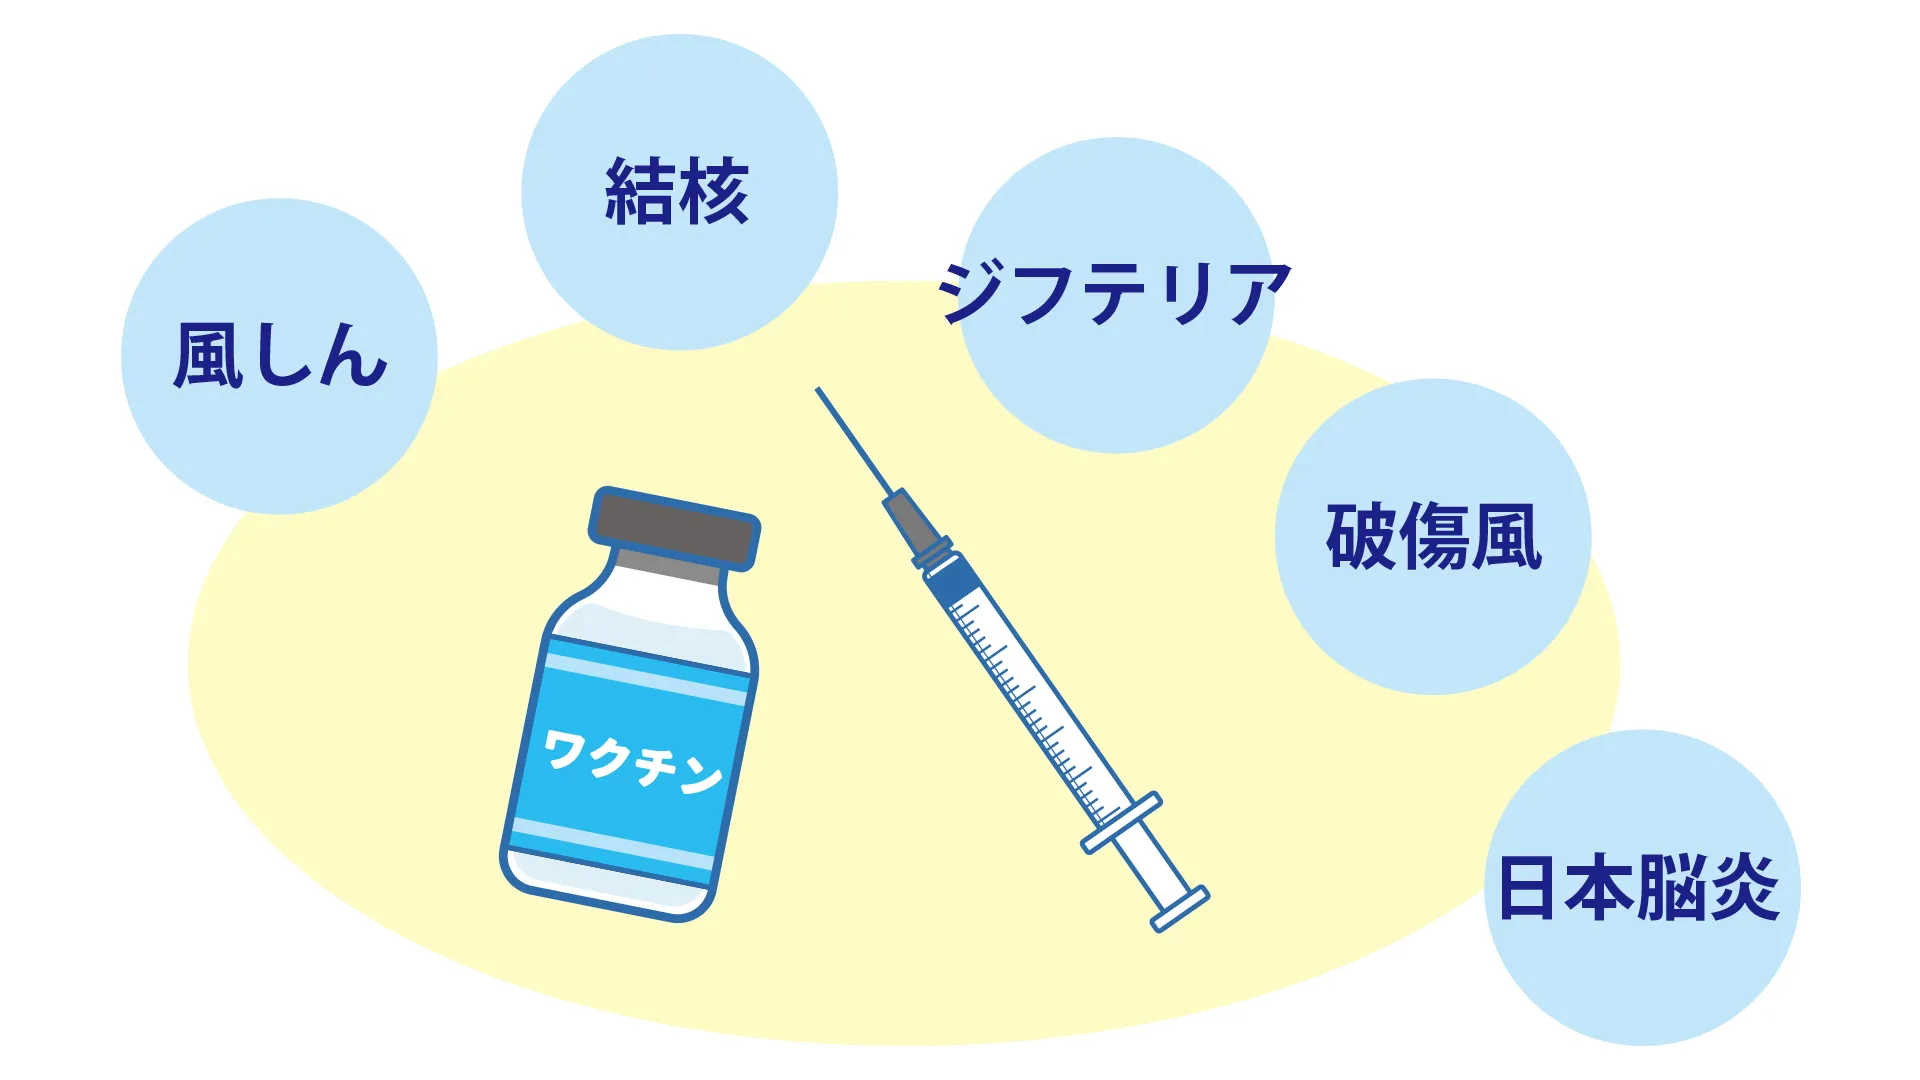 風しん、結核、ジフテリア、破傷風、日本脳炎など様々な病気のワクチン